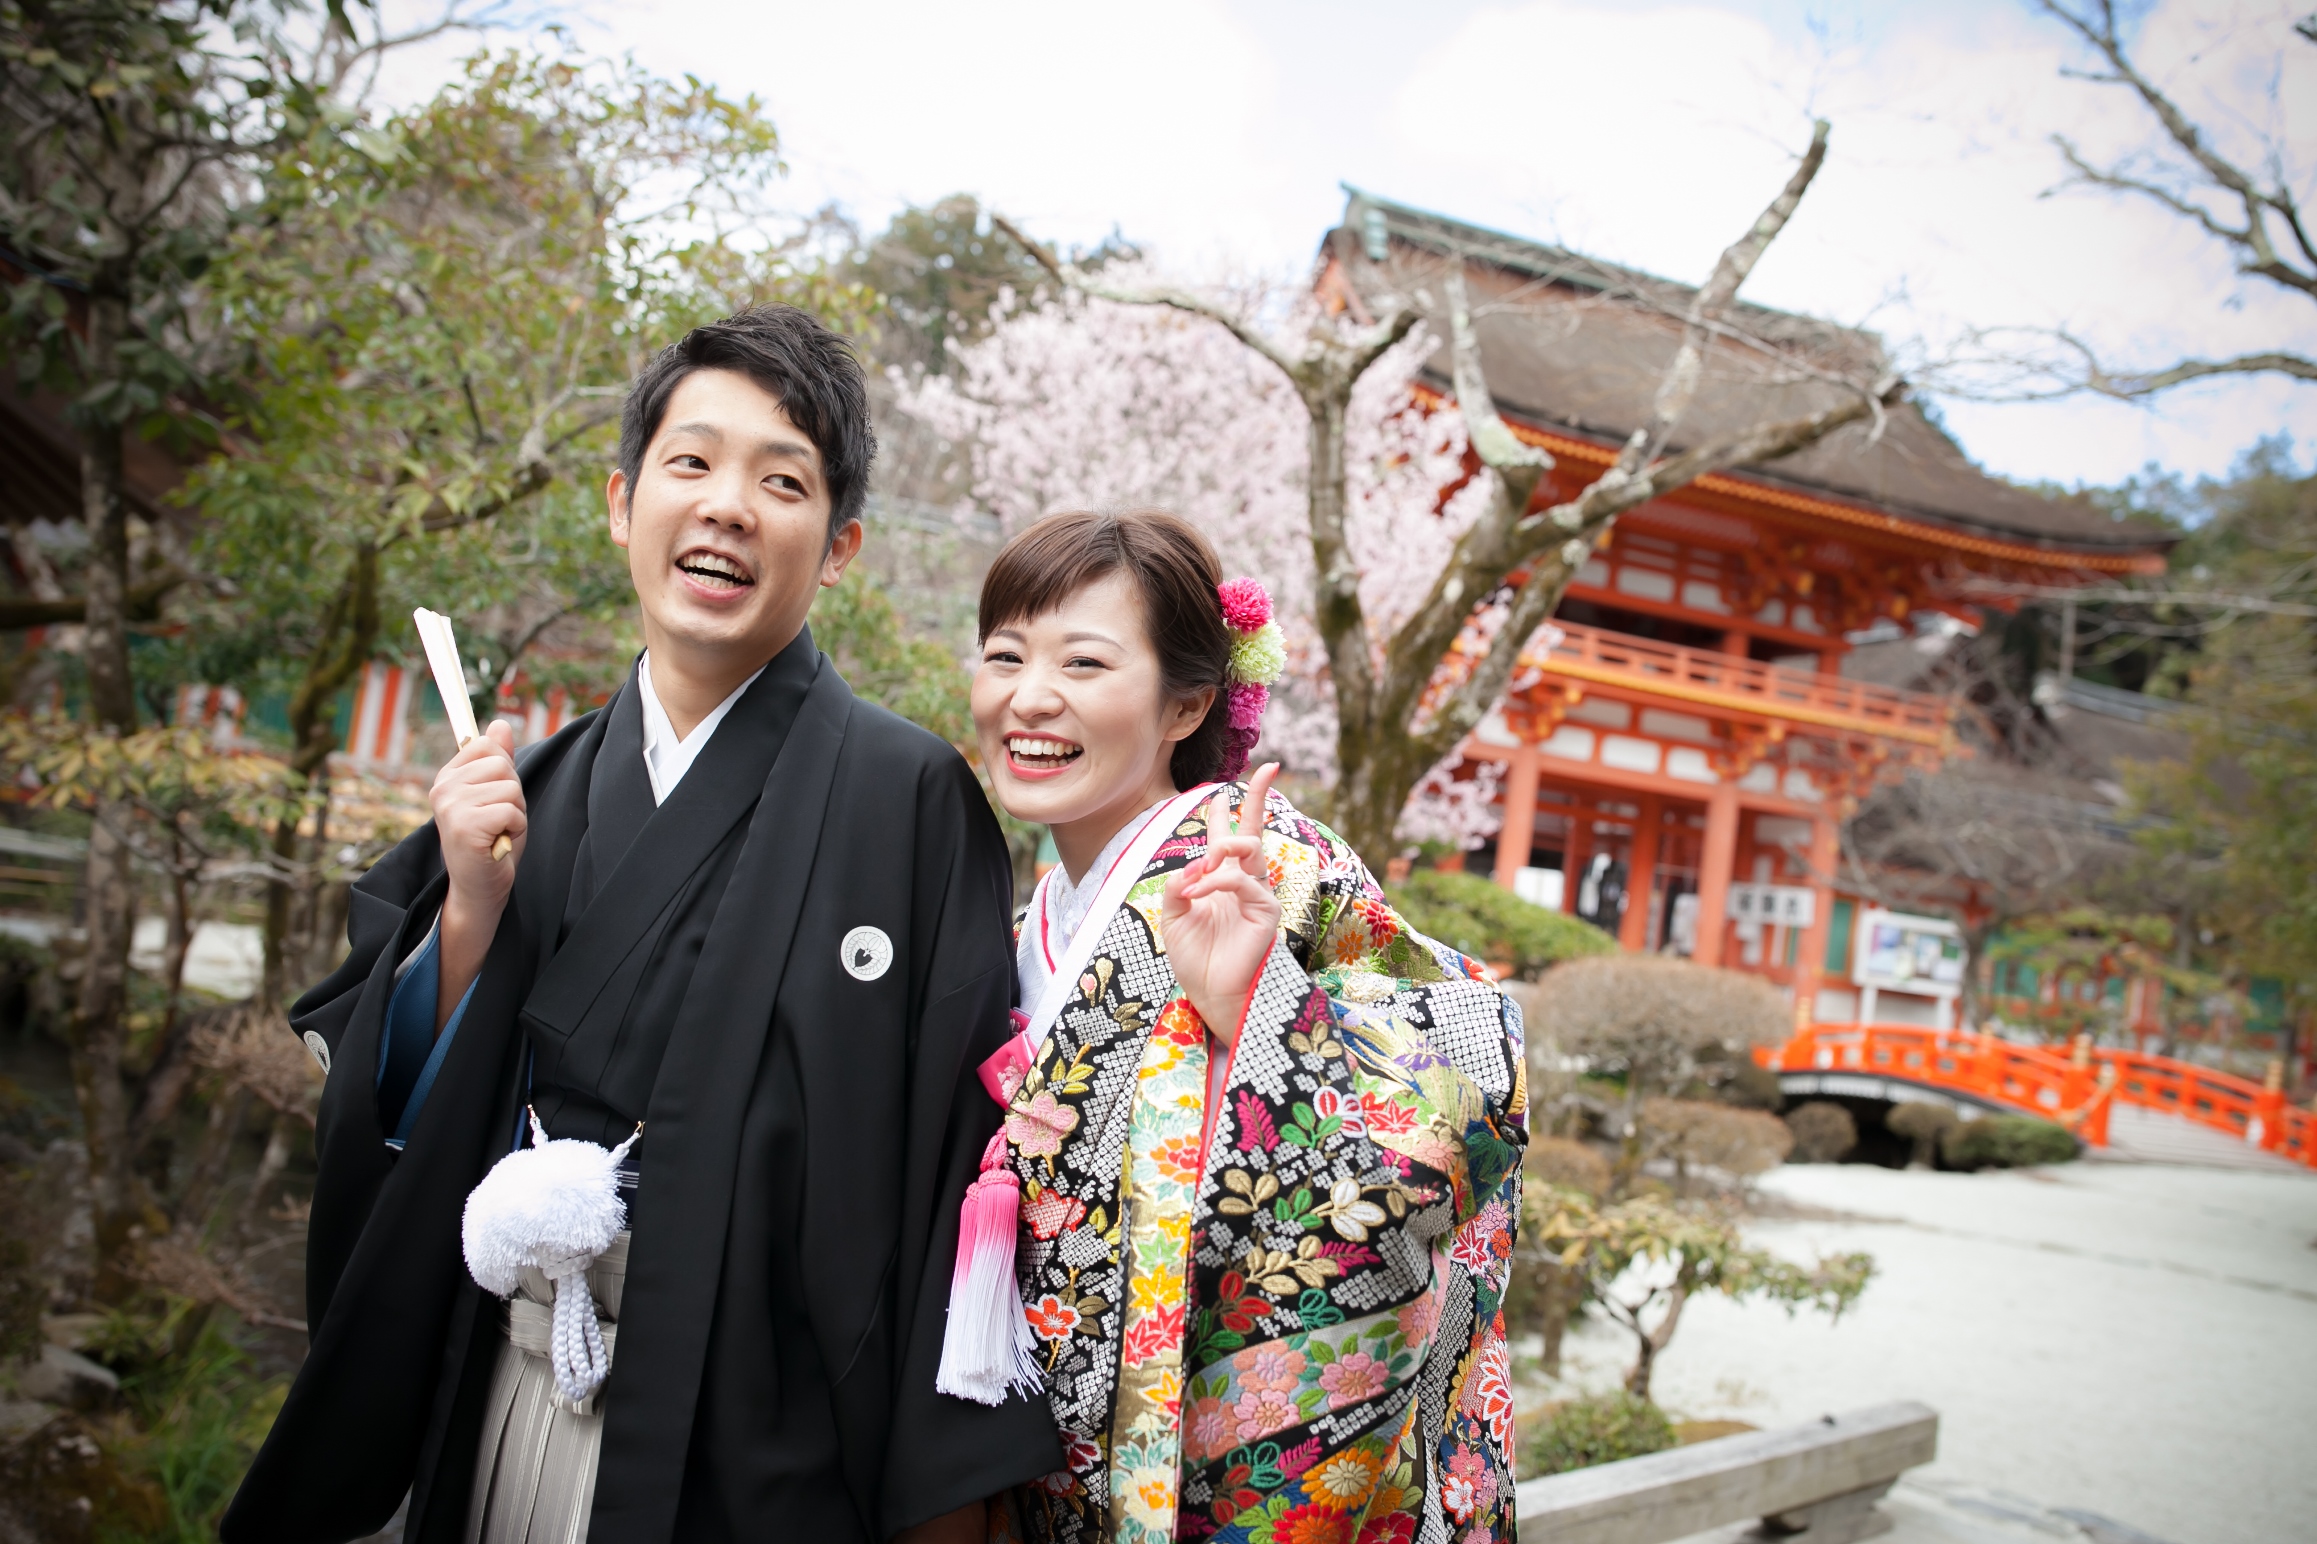 【京都神社結婚式】笑顔の可愛い新婦様です♪